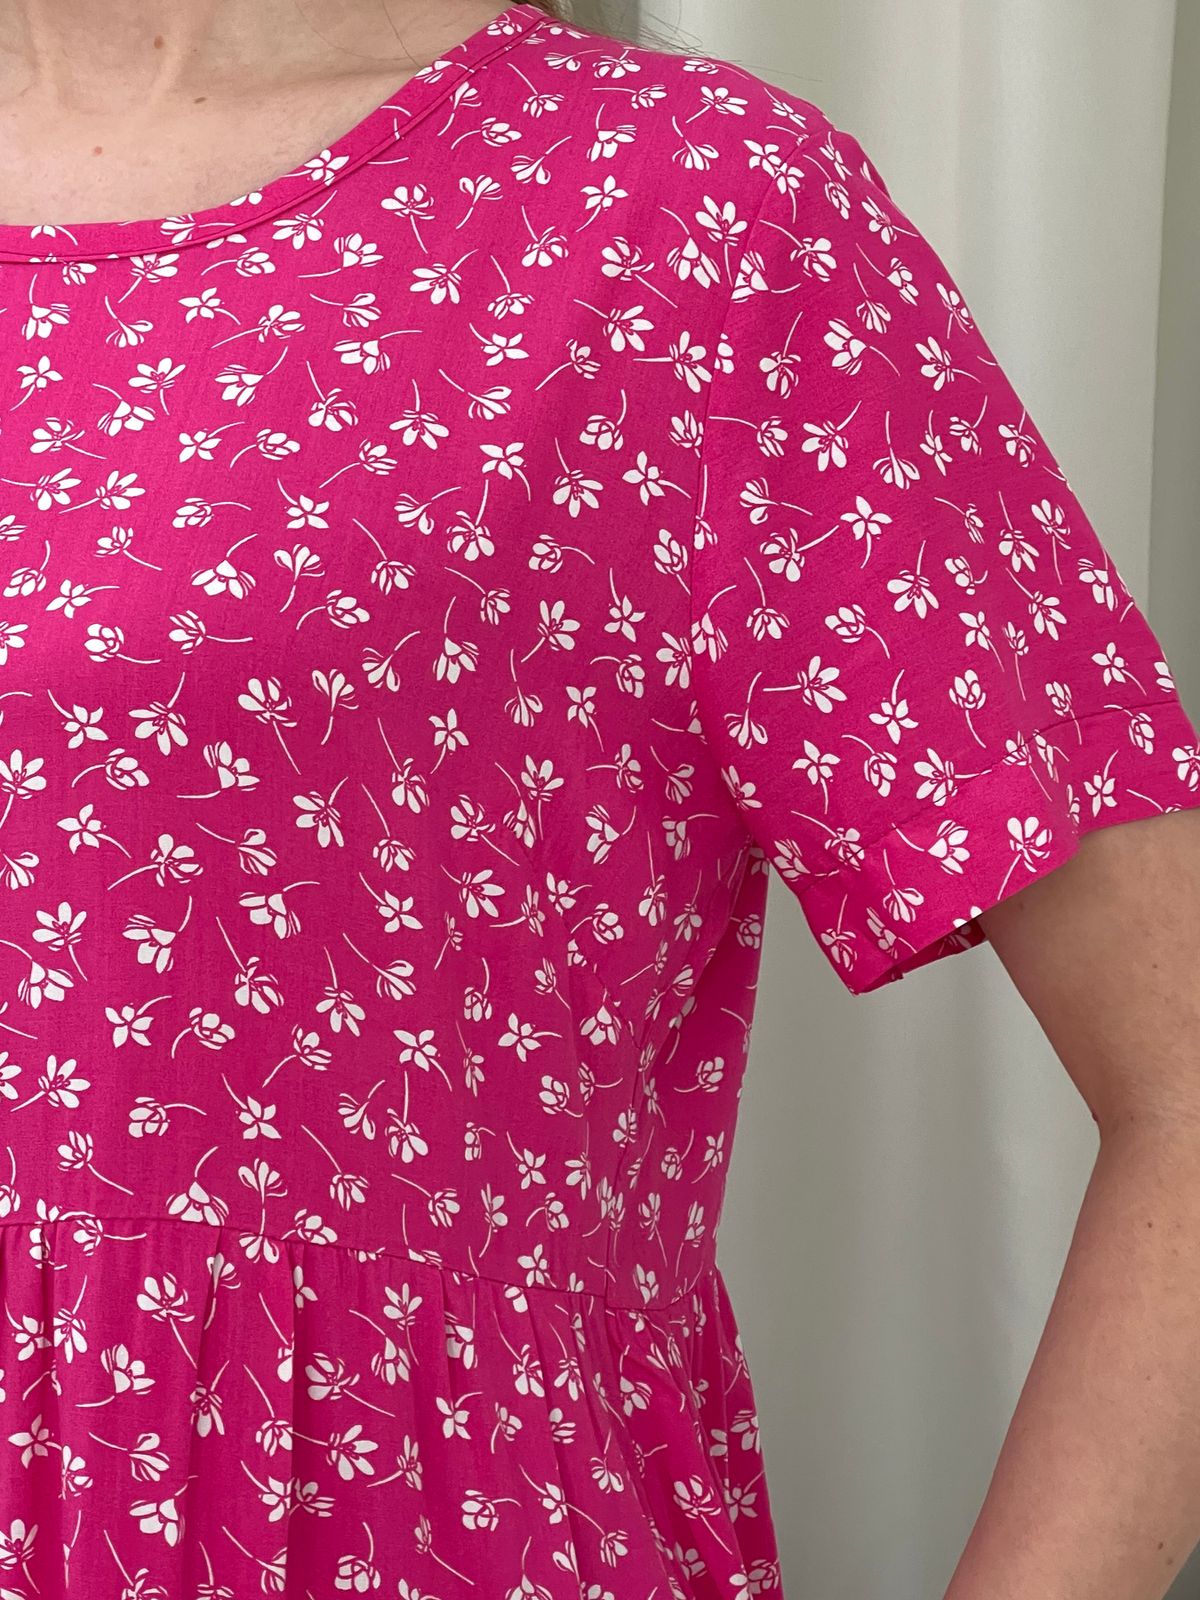 Купить Летнее платье с рюшами в цветочек розовое Merlini Казерта 700001263 размер 42-44 (S-M) в интернет-магазине